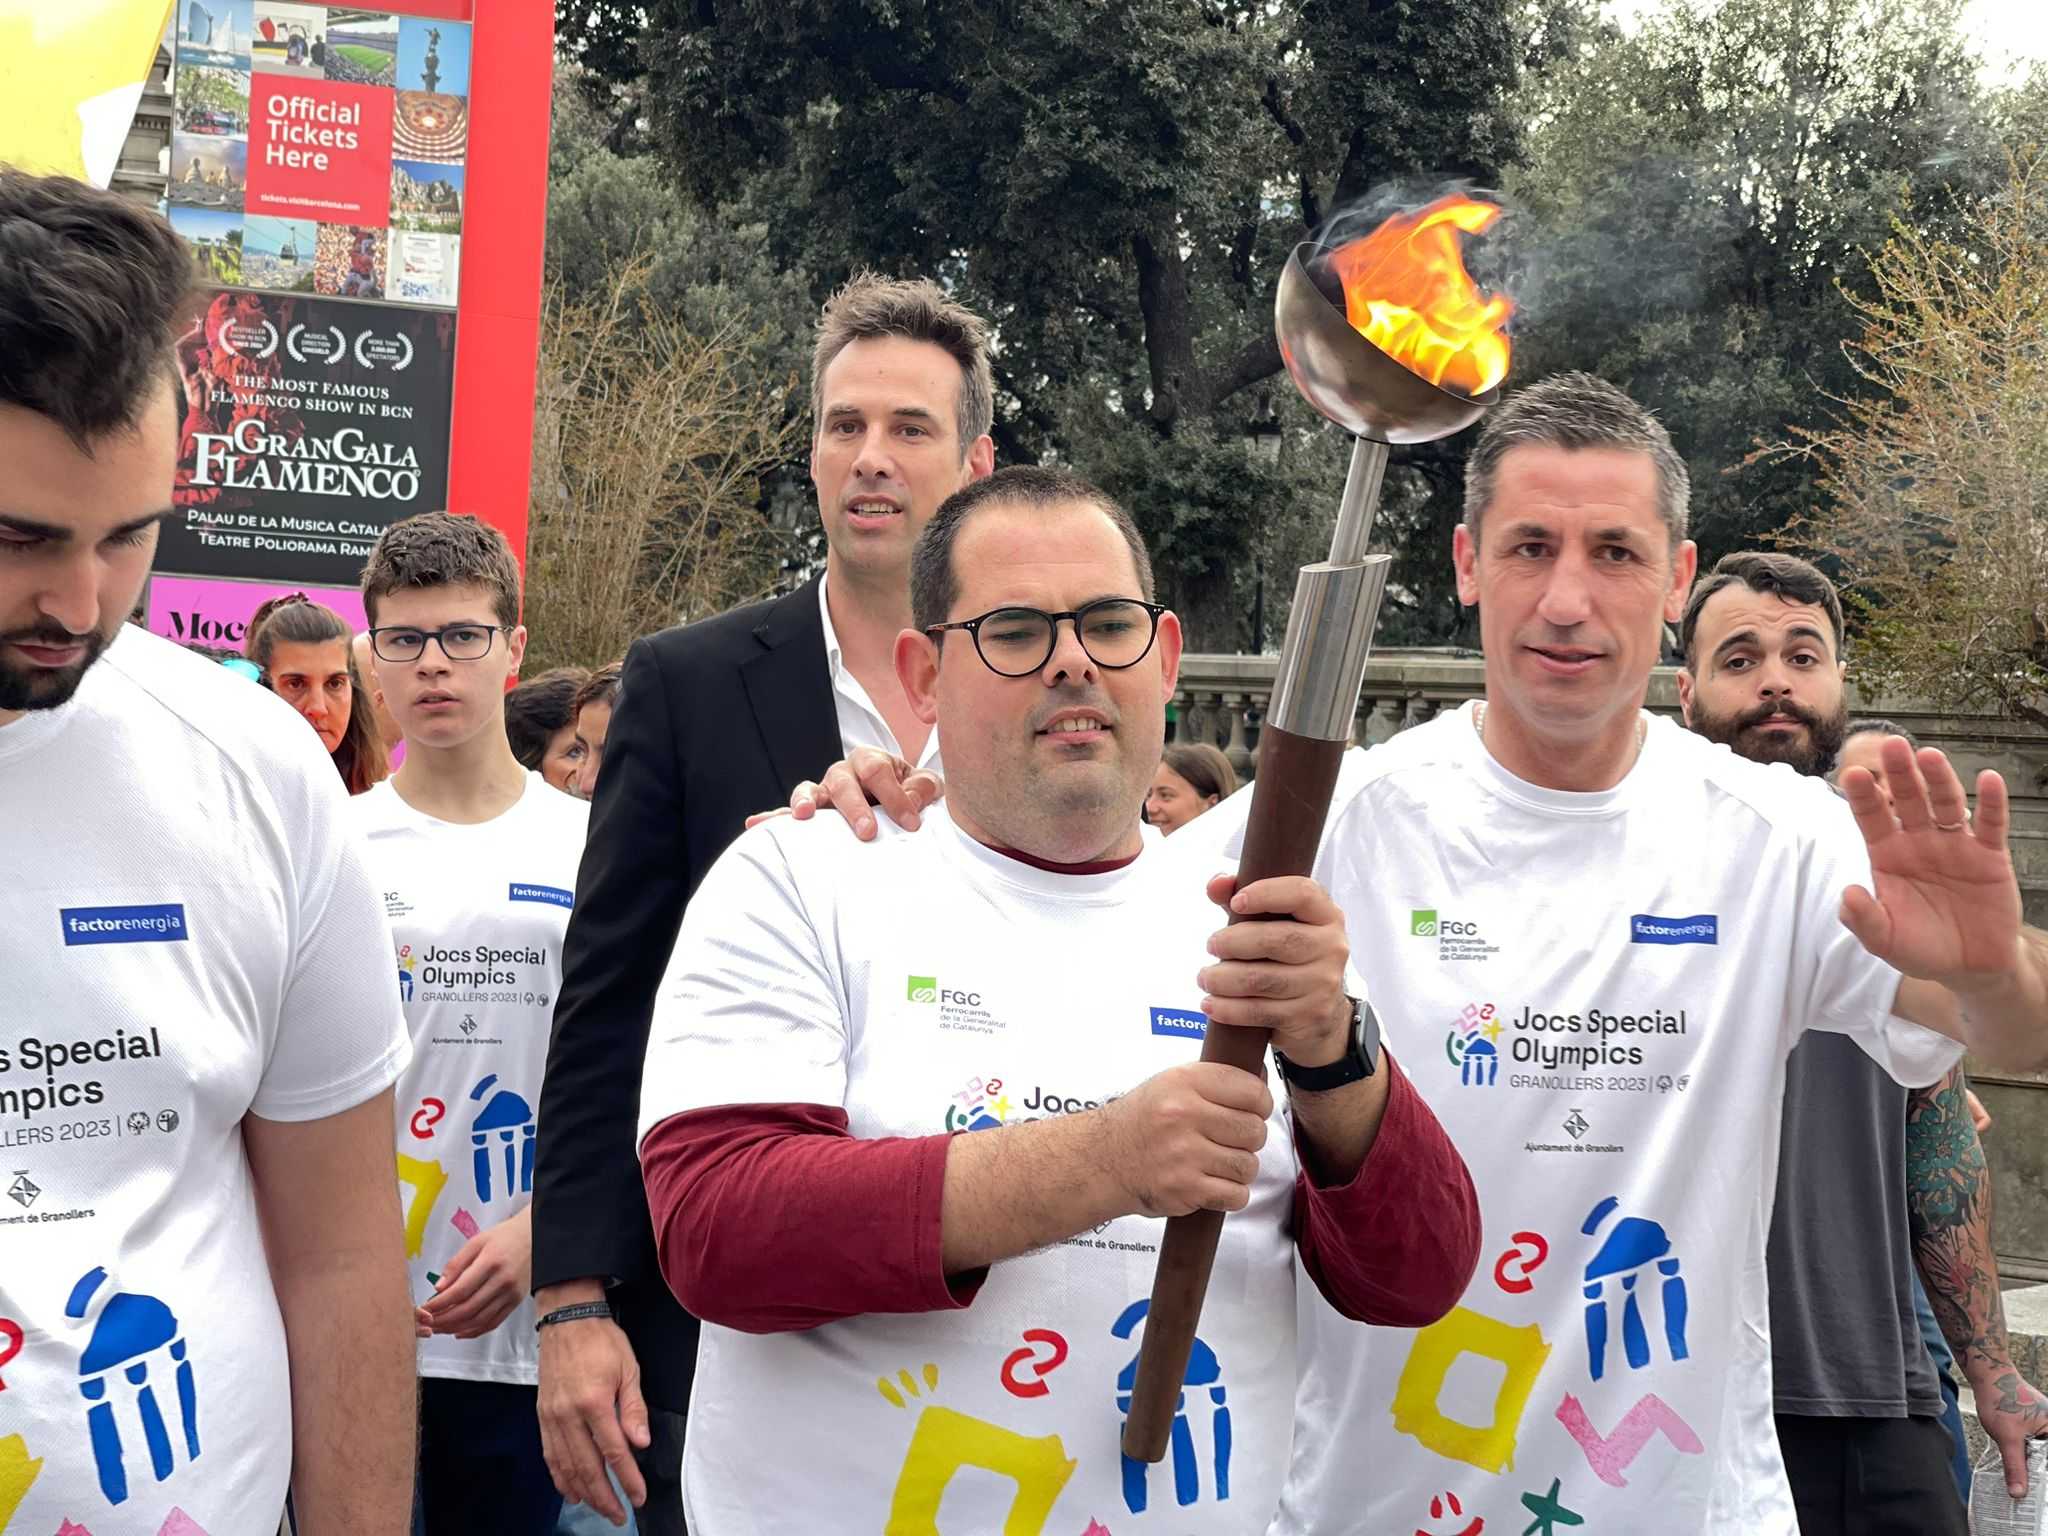 El RCD Espanyol, amb els Jocs Special Olympics